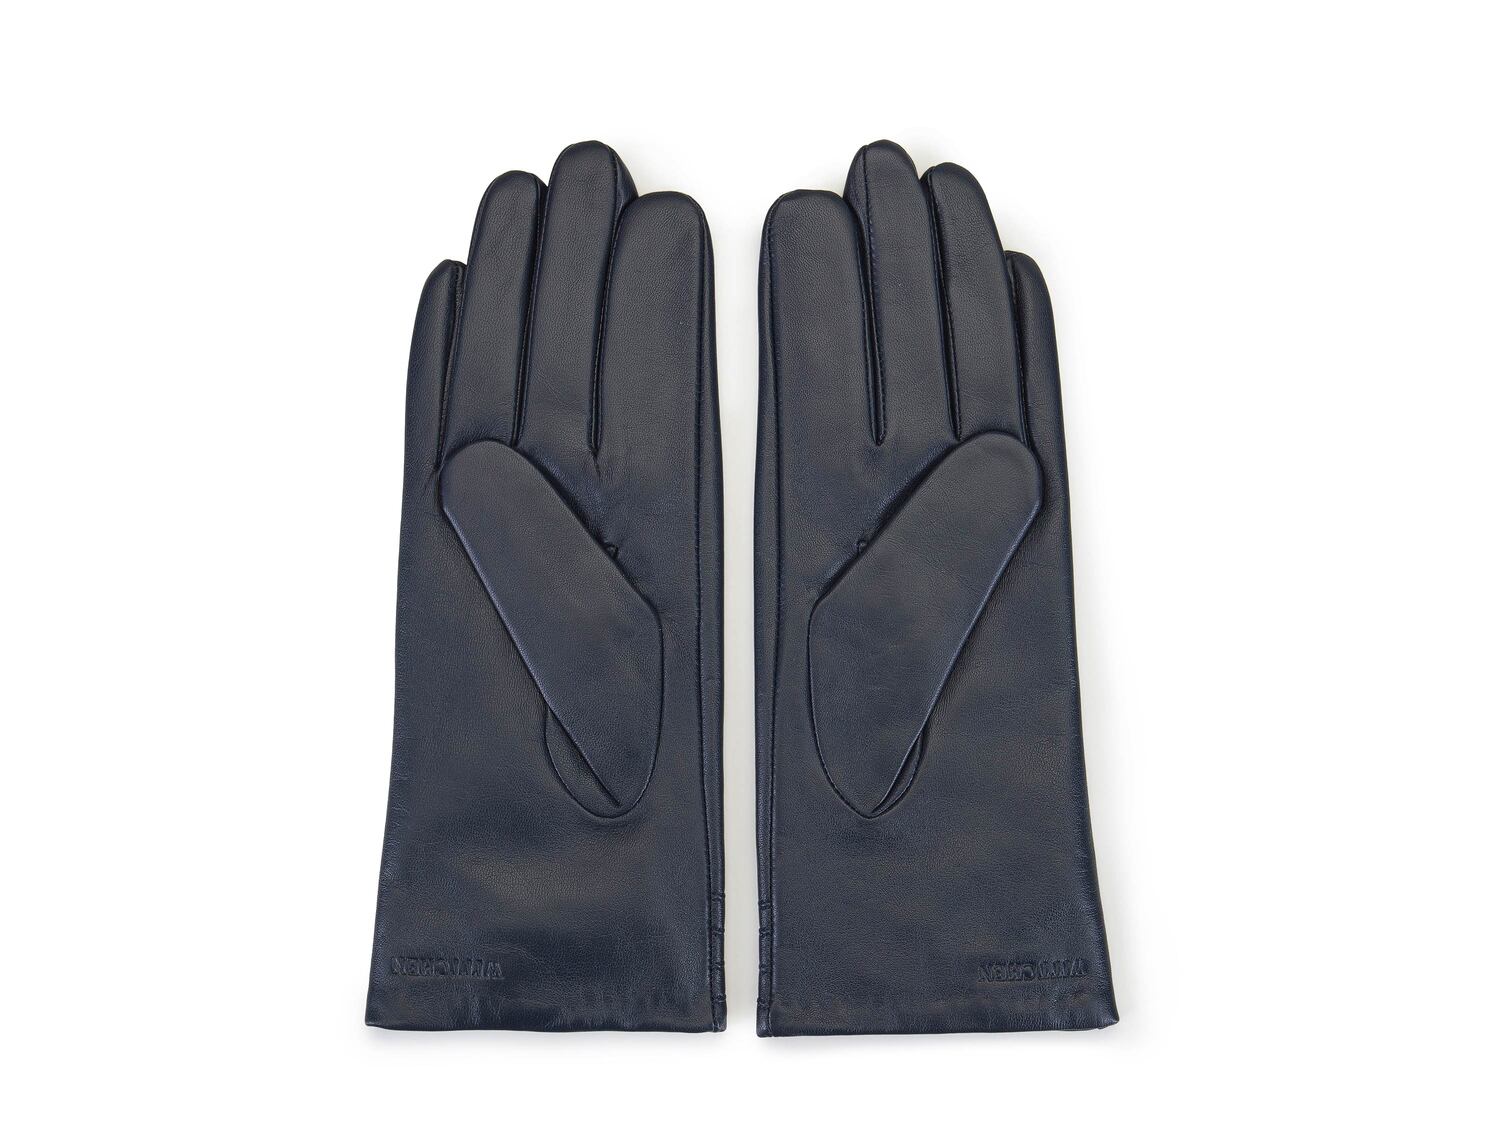 Rękawiczki damskie Wittchen, cena 89,00 PLN 
- rozmiary: S-L
- ocieplane
- materiał: ...